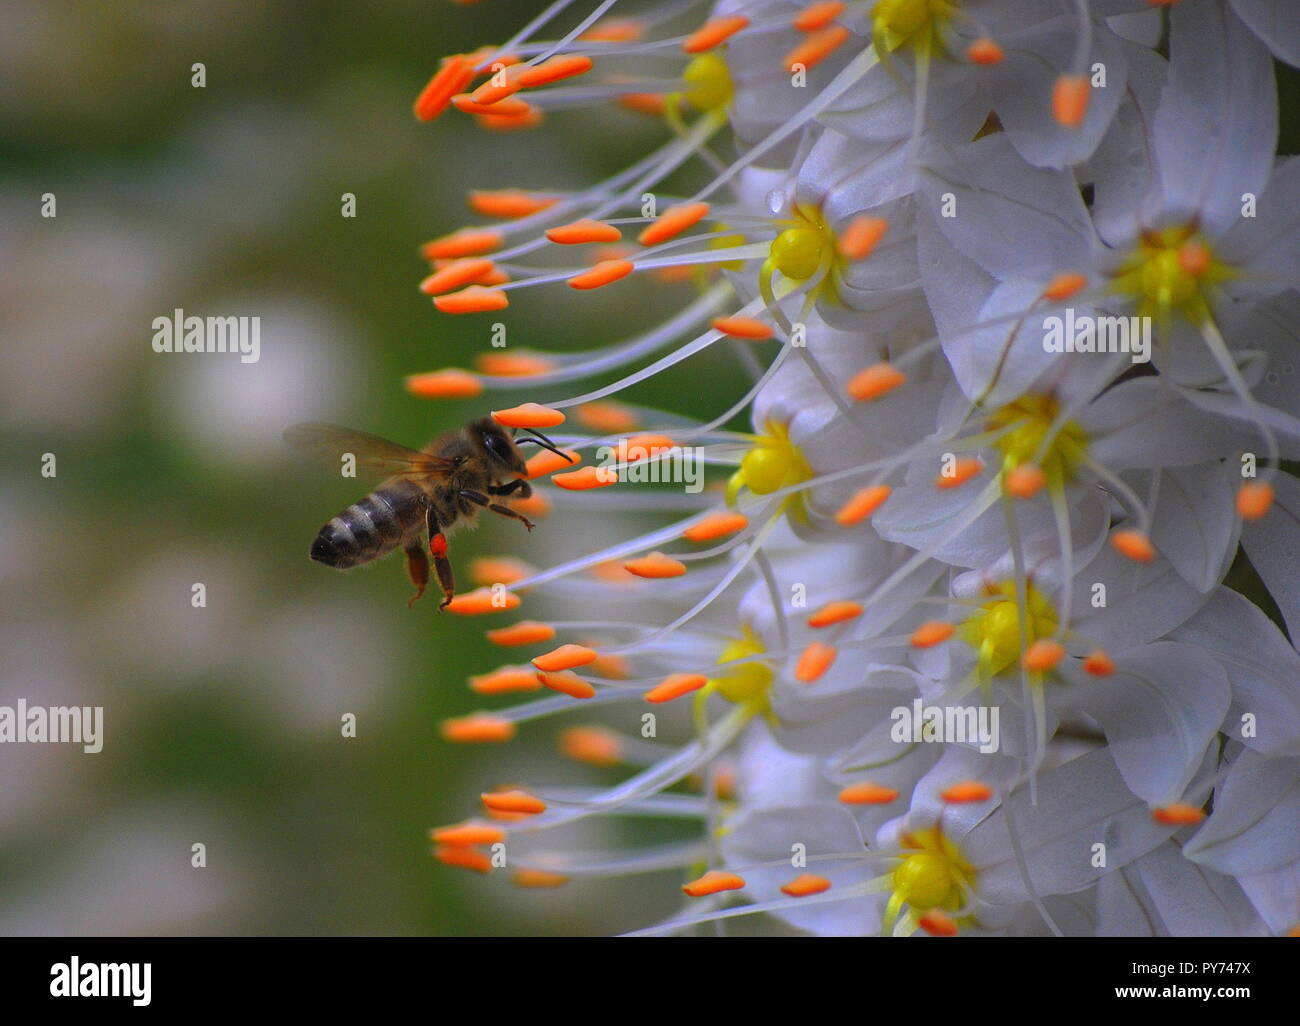 Un'ape visitando un grande fiore. Arancione chiaro e di colore bianco del fiore in contrasto con le api in bianco e nero e marrone. Foto Stock